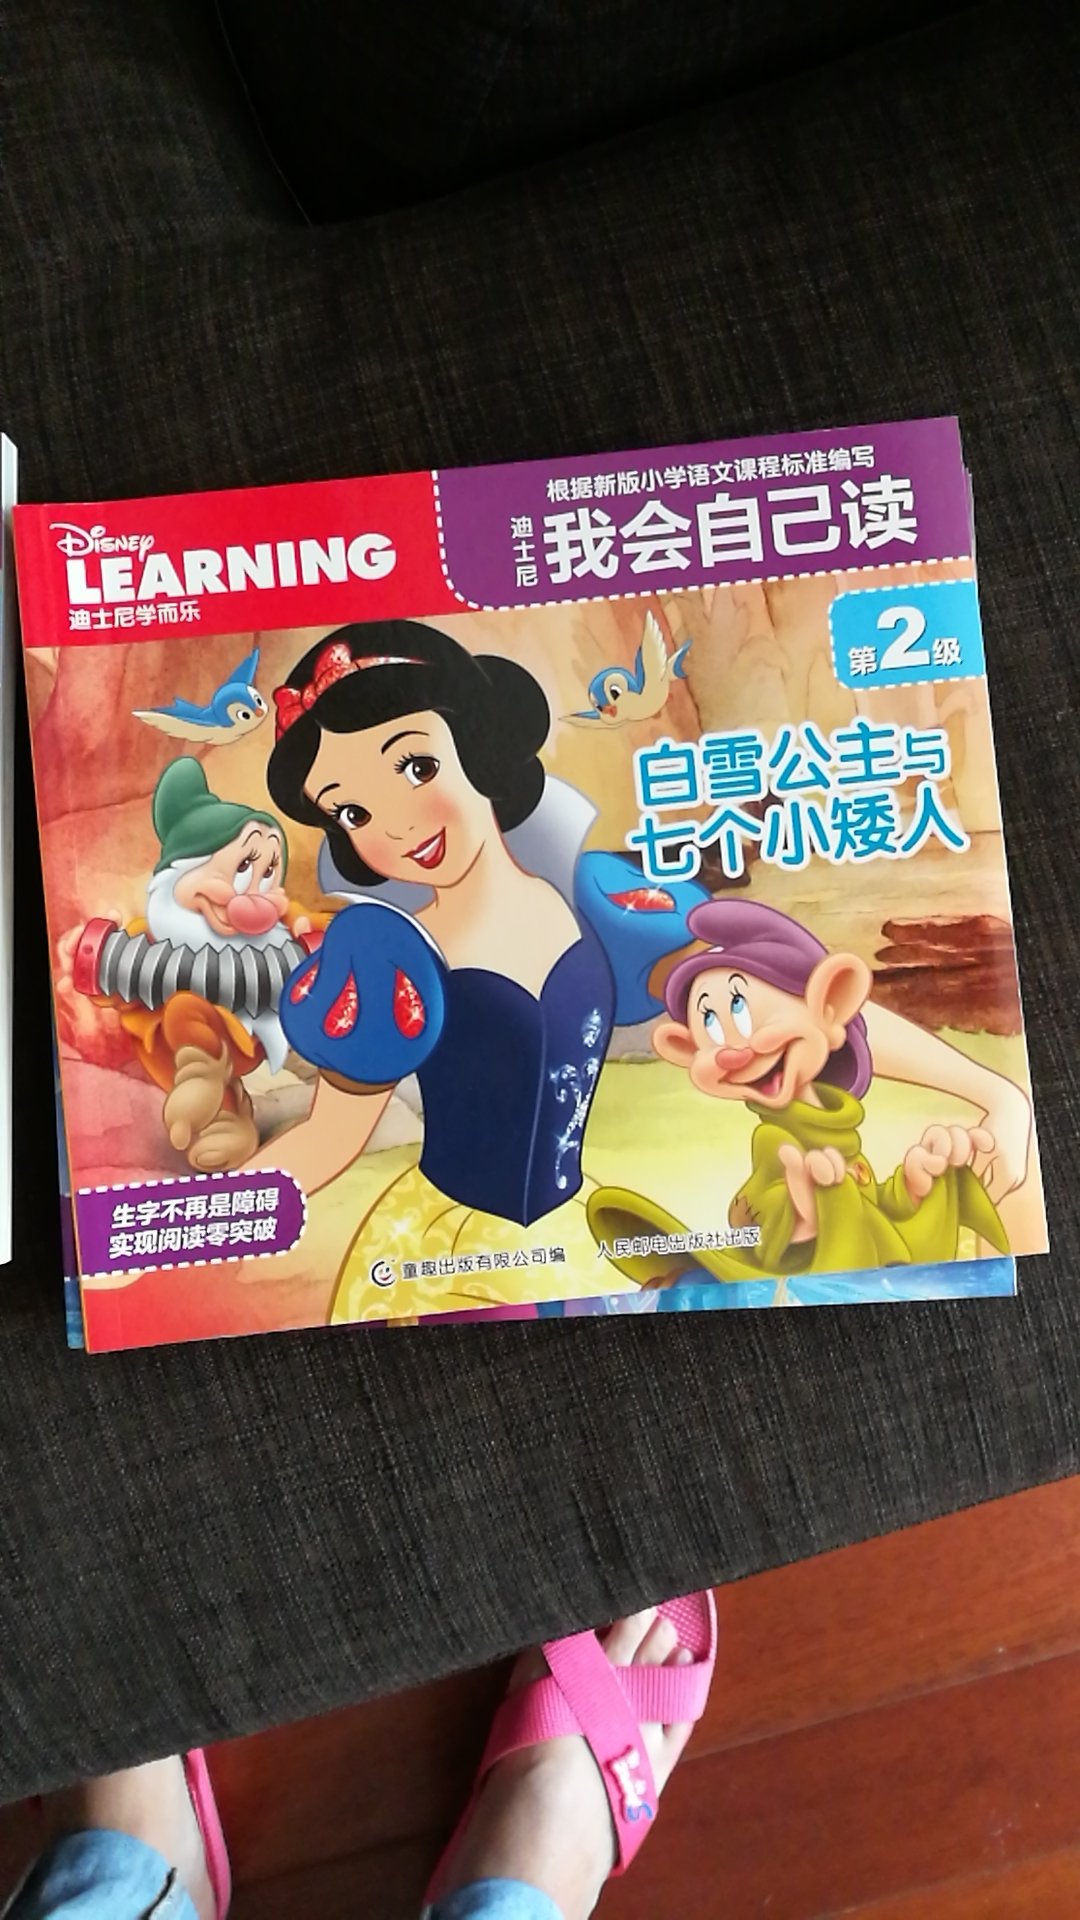 一直在找的中文分级读物，说实话，中文分级读物做的好的很少，这套真心不错，让孩子一步一步地从易到难认识字。推荐。